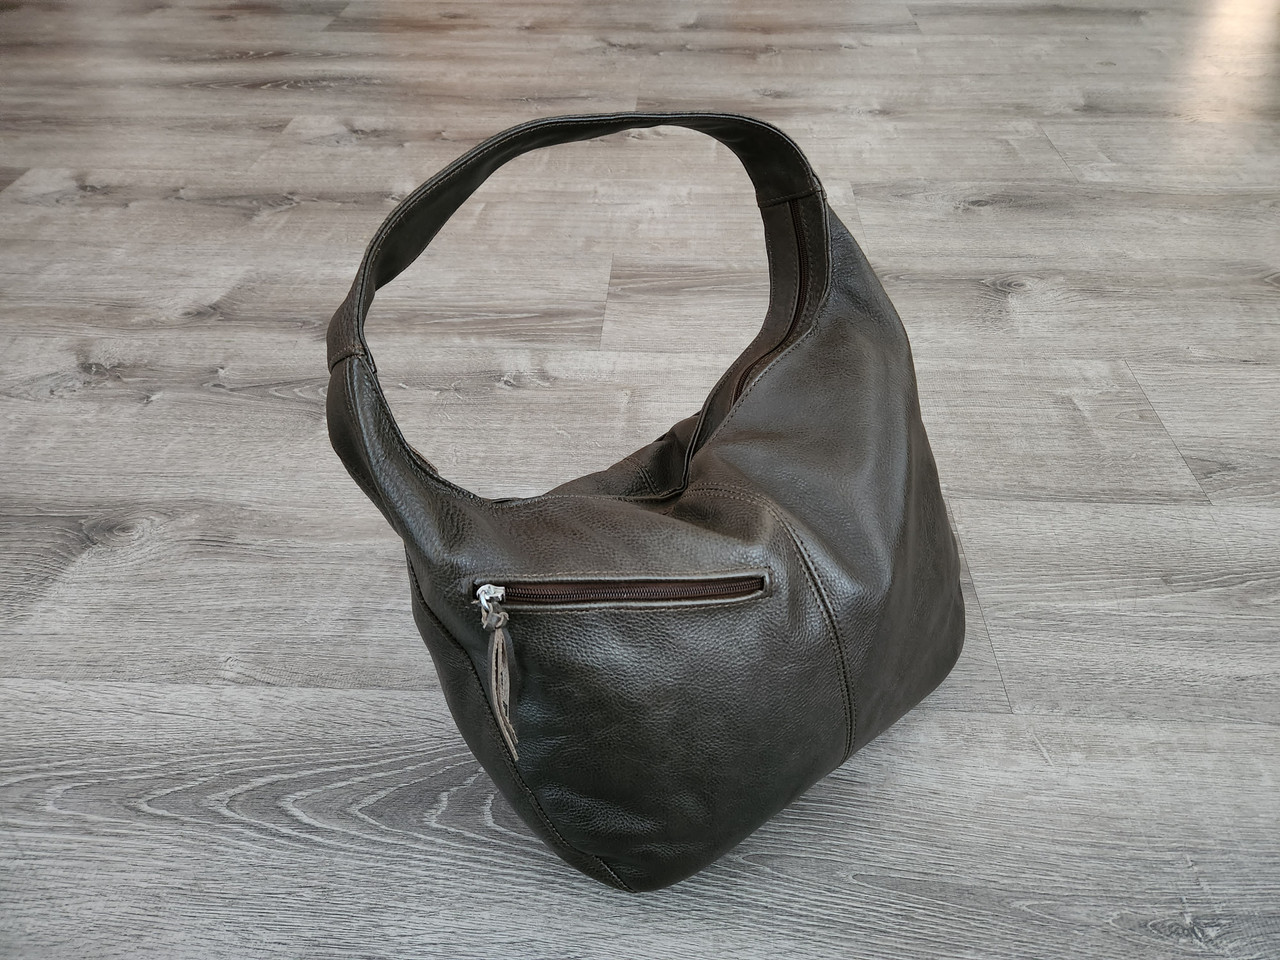 Handbags Purses Fashion | Purses Handbags Luxury | Cute Purses Handbags -  Cute Handbags - Aliexpress